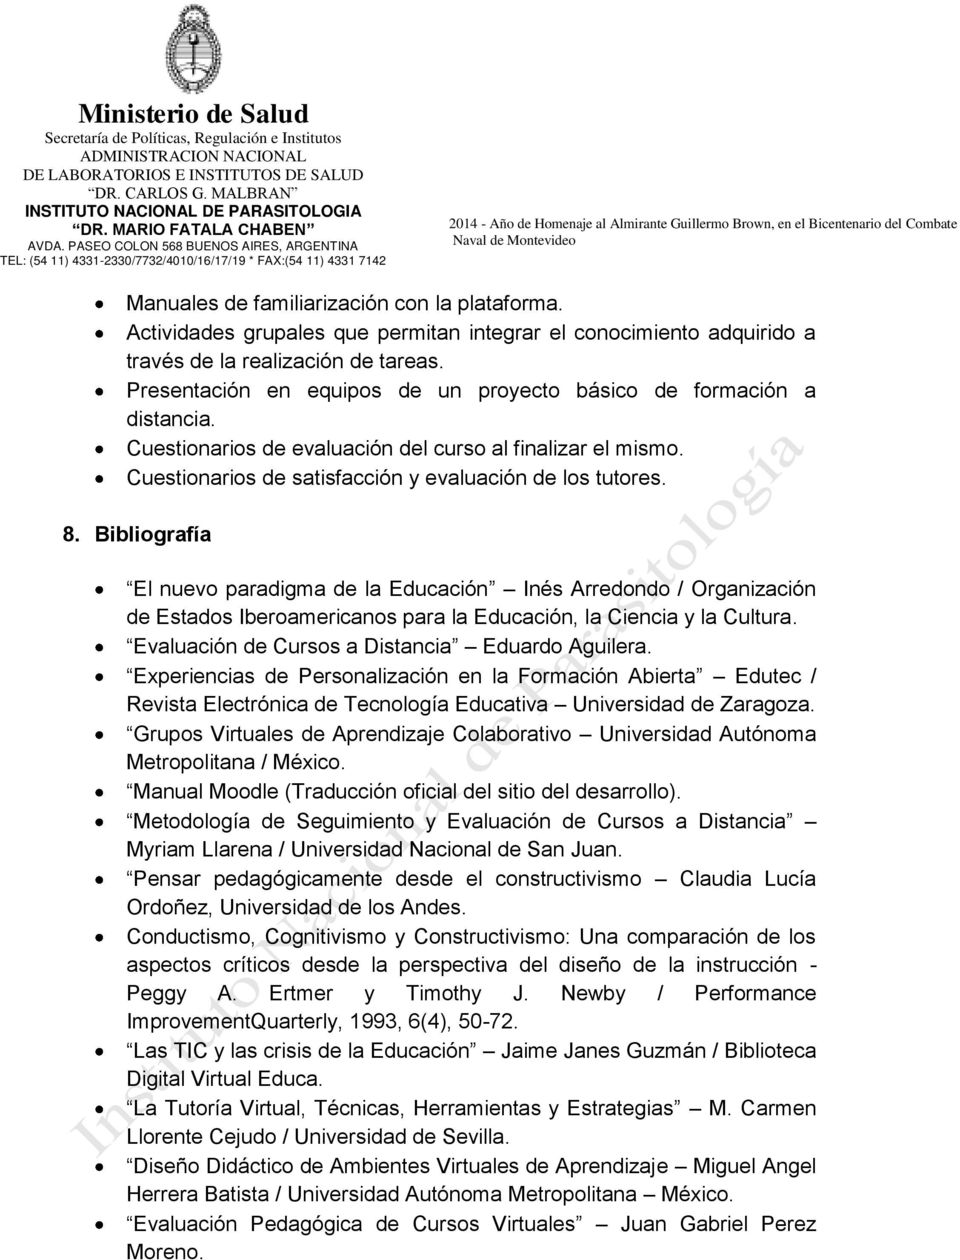 Bibliografía El nuevo paradigma de la Educación Inés Arredondo / Organización de Estados Iberoamericanos para la Educación, la Ciencia y la Cultura. Evaluación de Cursos a Distancia Eduardo Aguilera.